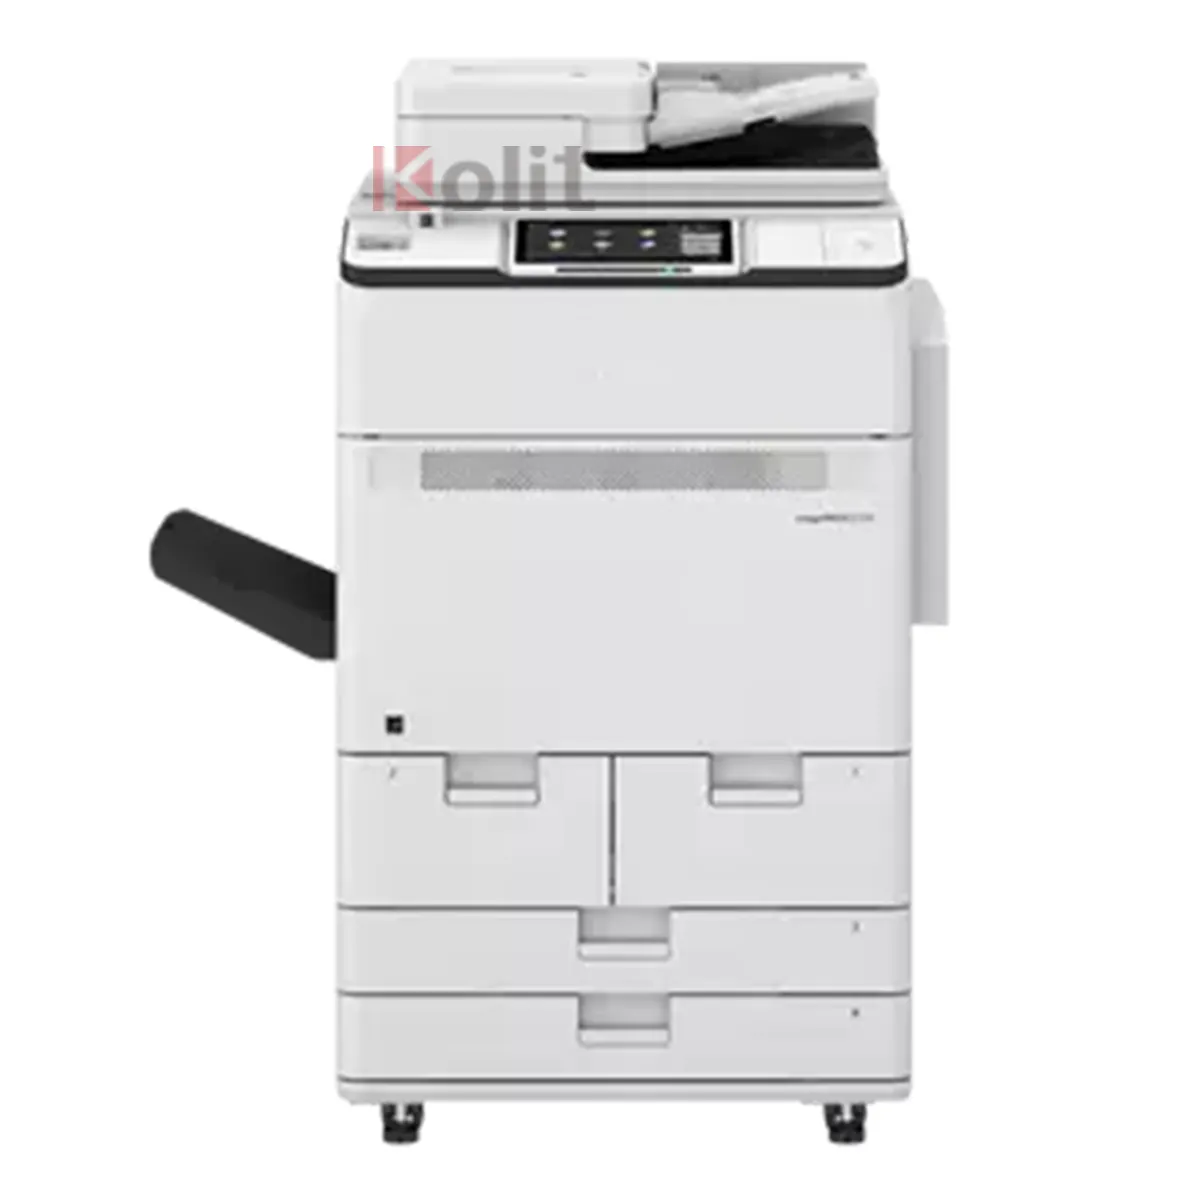 Новая модель пресс C270 цветной многофункциональный цифровой печатный фотокопировальный аппарат для малого бизнеса